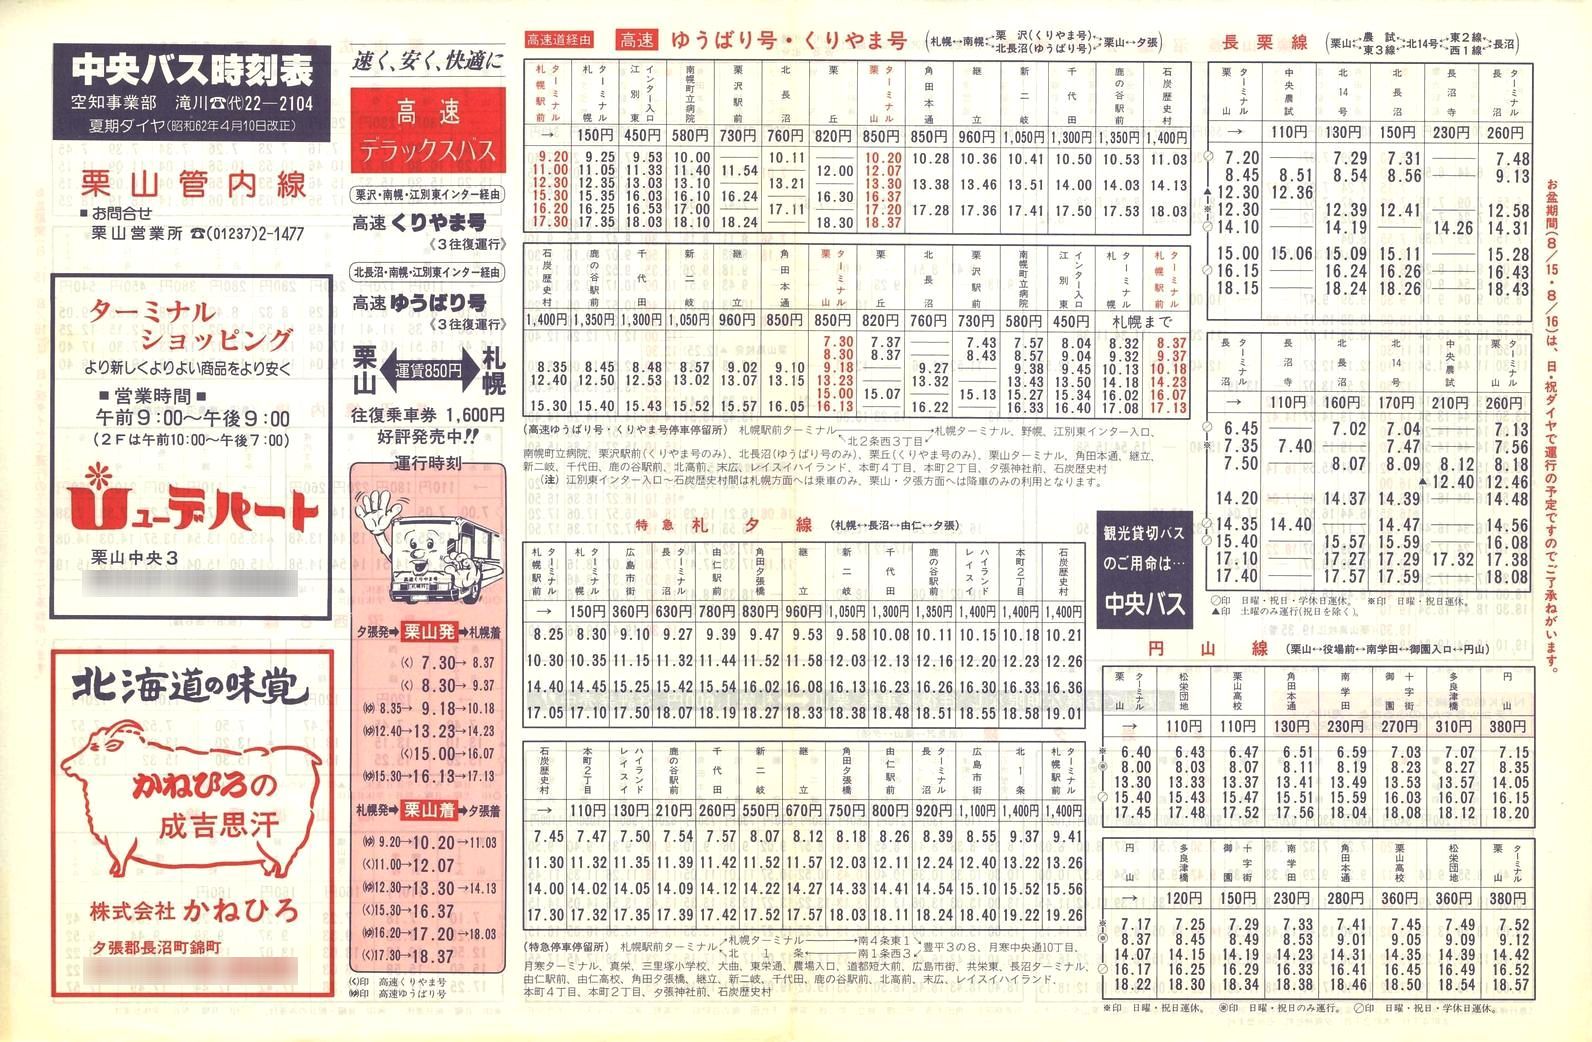 1987-04-10改正_北海道中央バス(空知)_栗山管内線時刻表表面